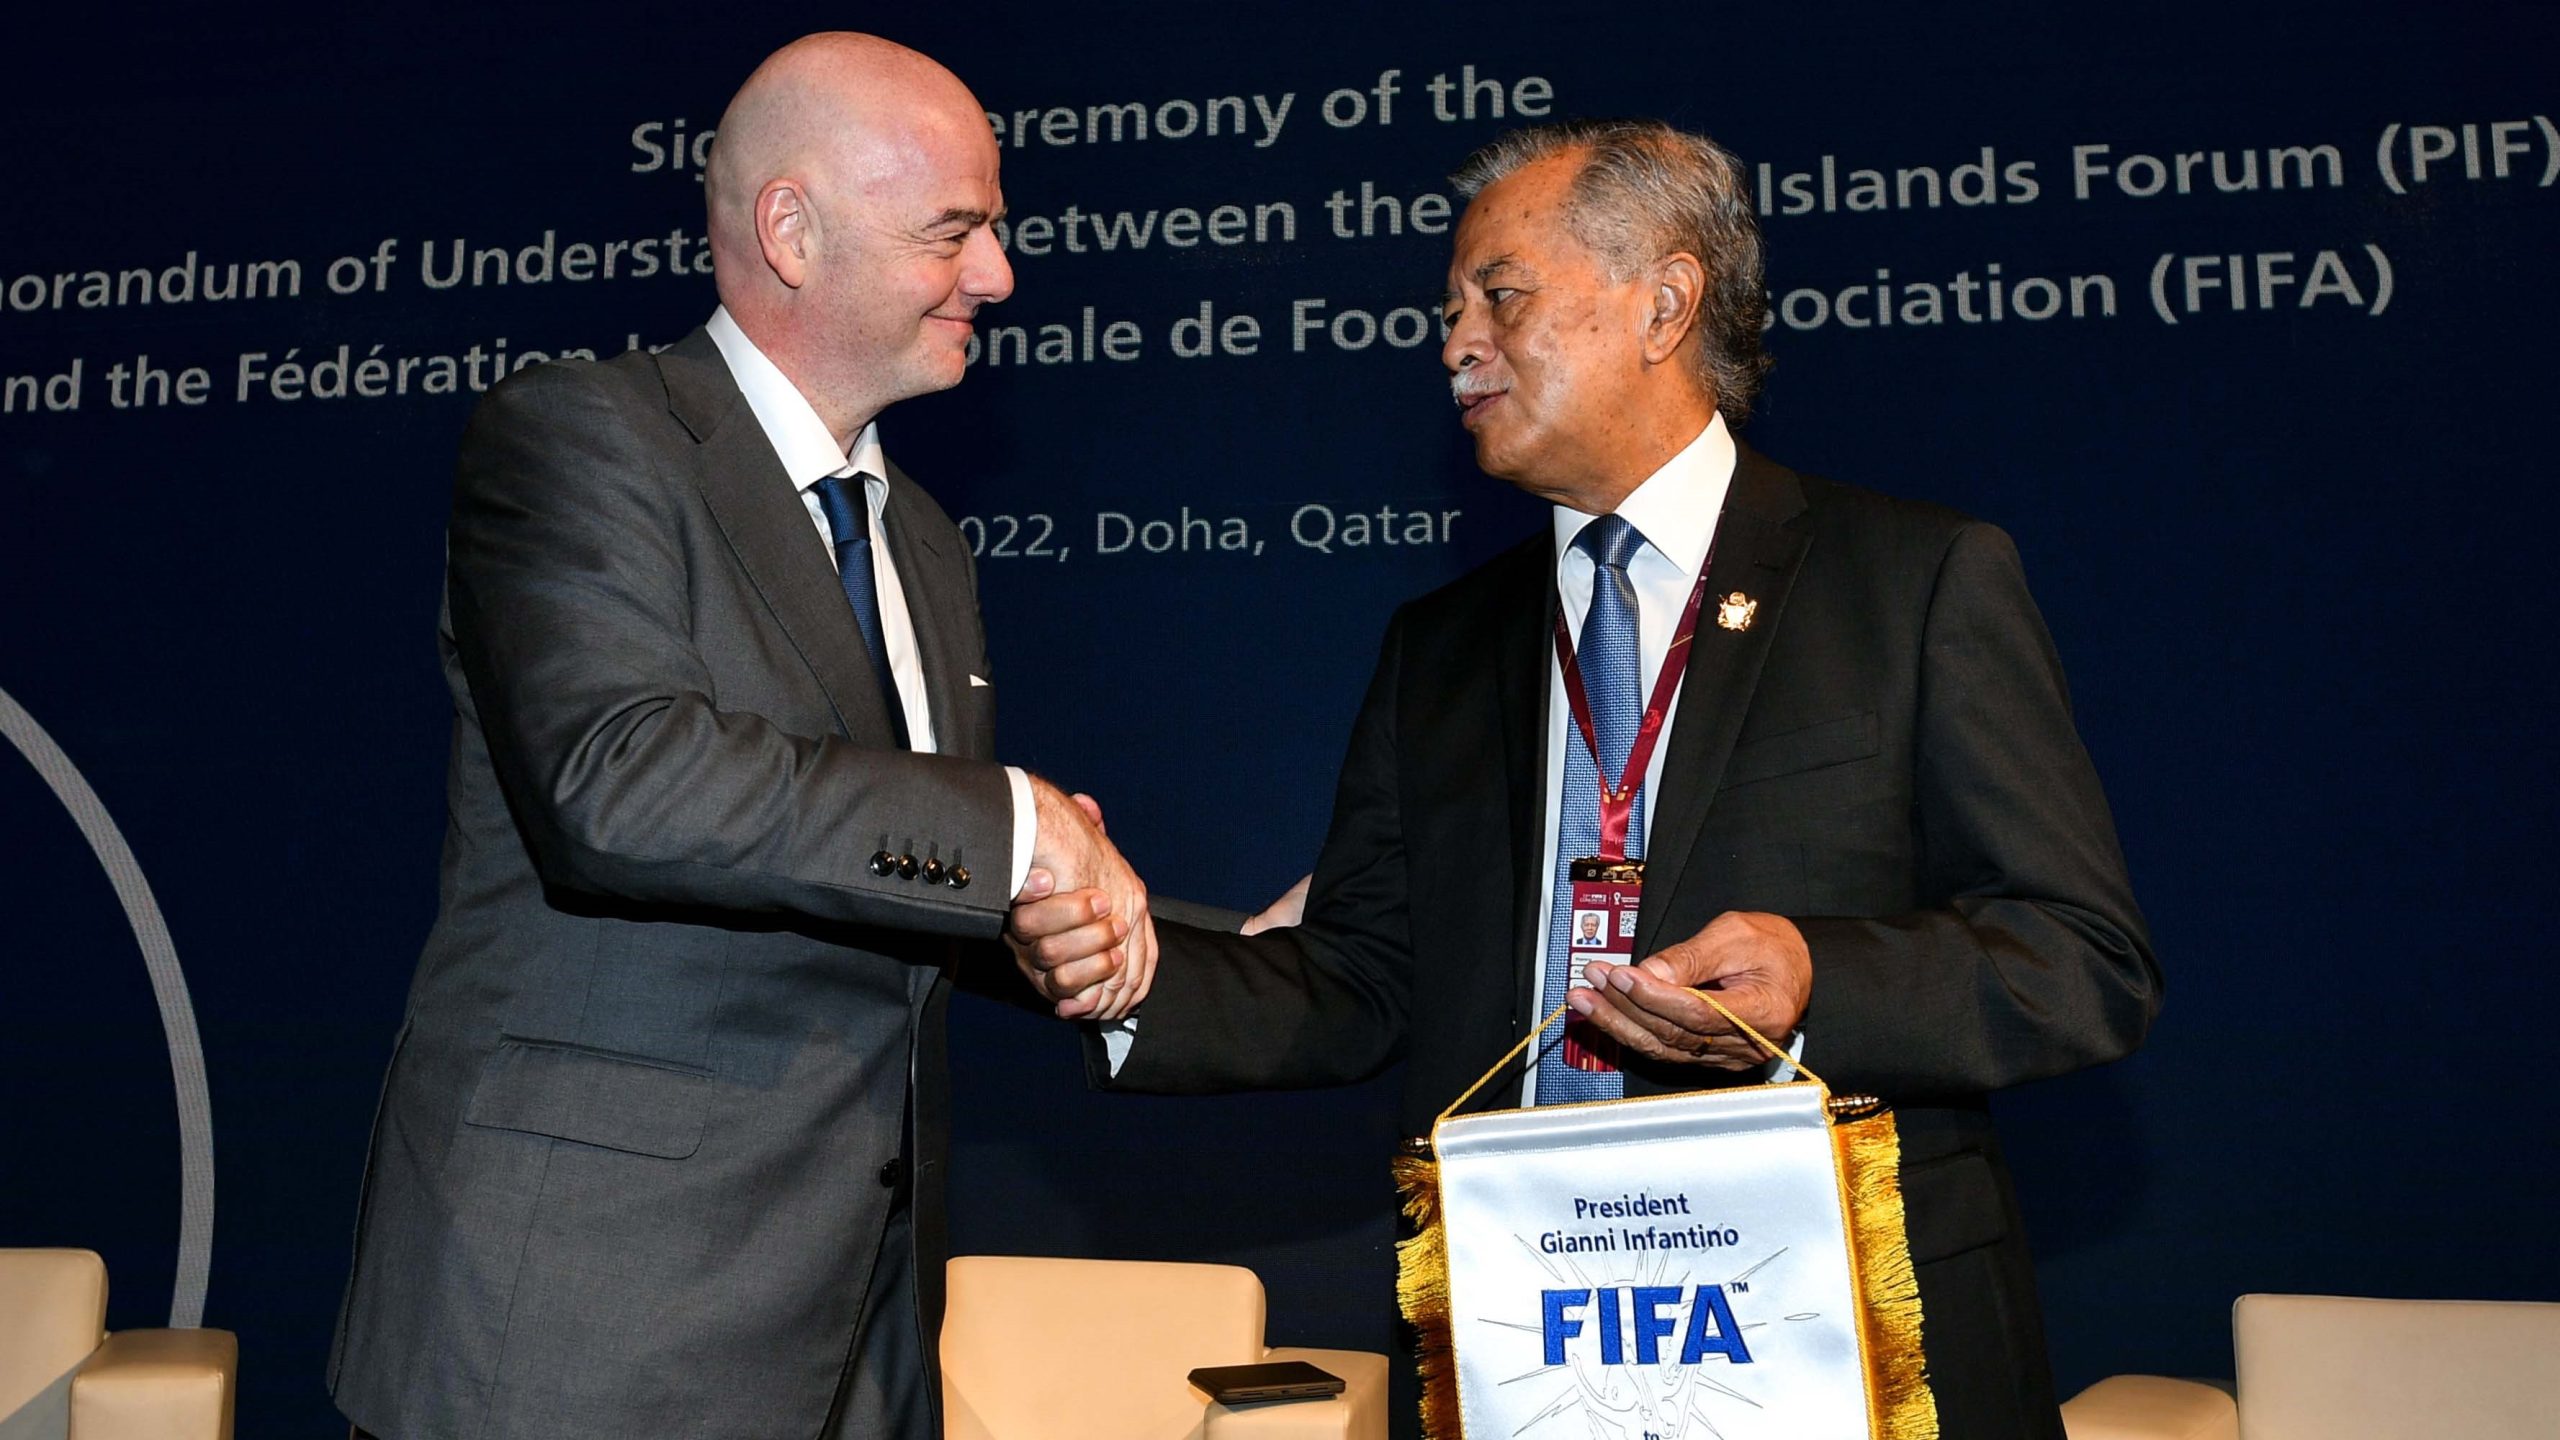 Lire la suite à propos de l’article Le secrétariat du Forum des îles du Pacifique et la FIFA mettent leur partenariat pour le climat en action